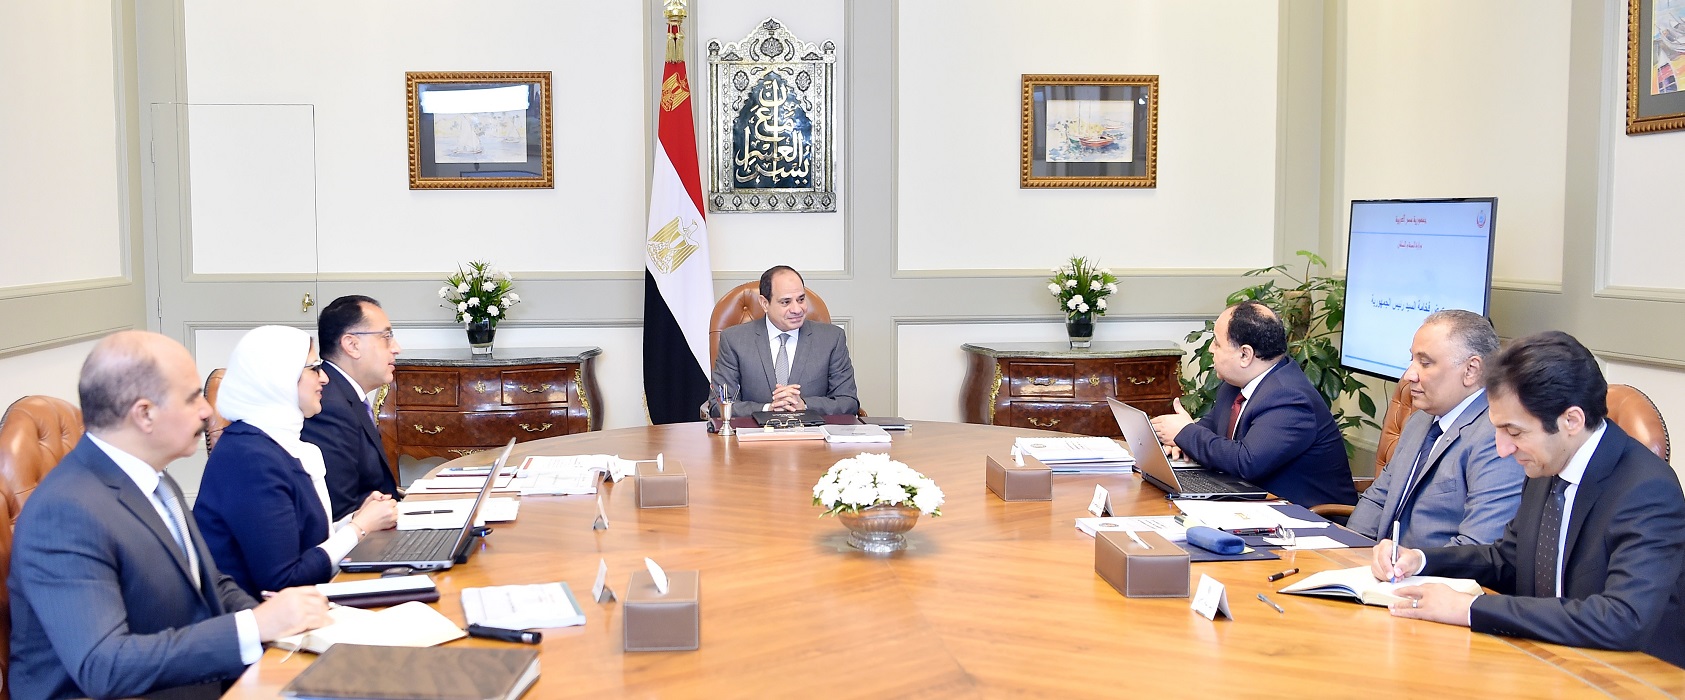   شاهد|| بسام راضى: الرئيس السيسي يتابع إجراءات تنفيذ منظومة التأمين الصحي الشامل